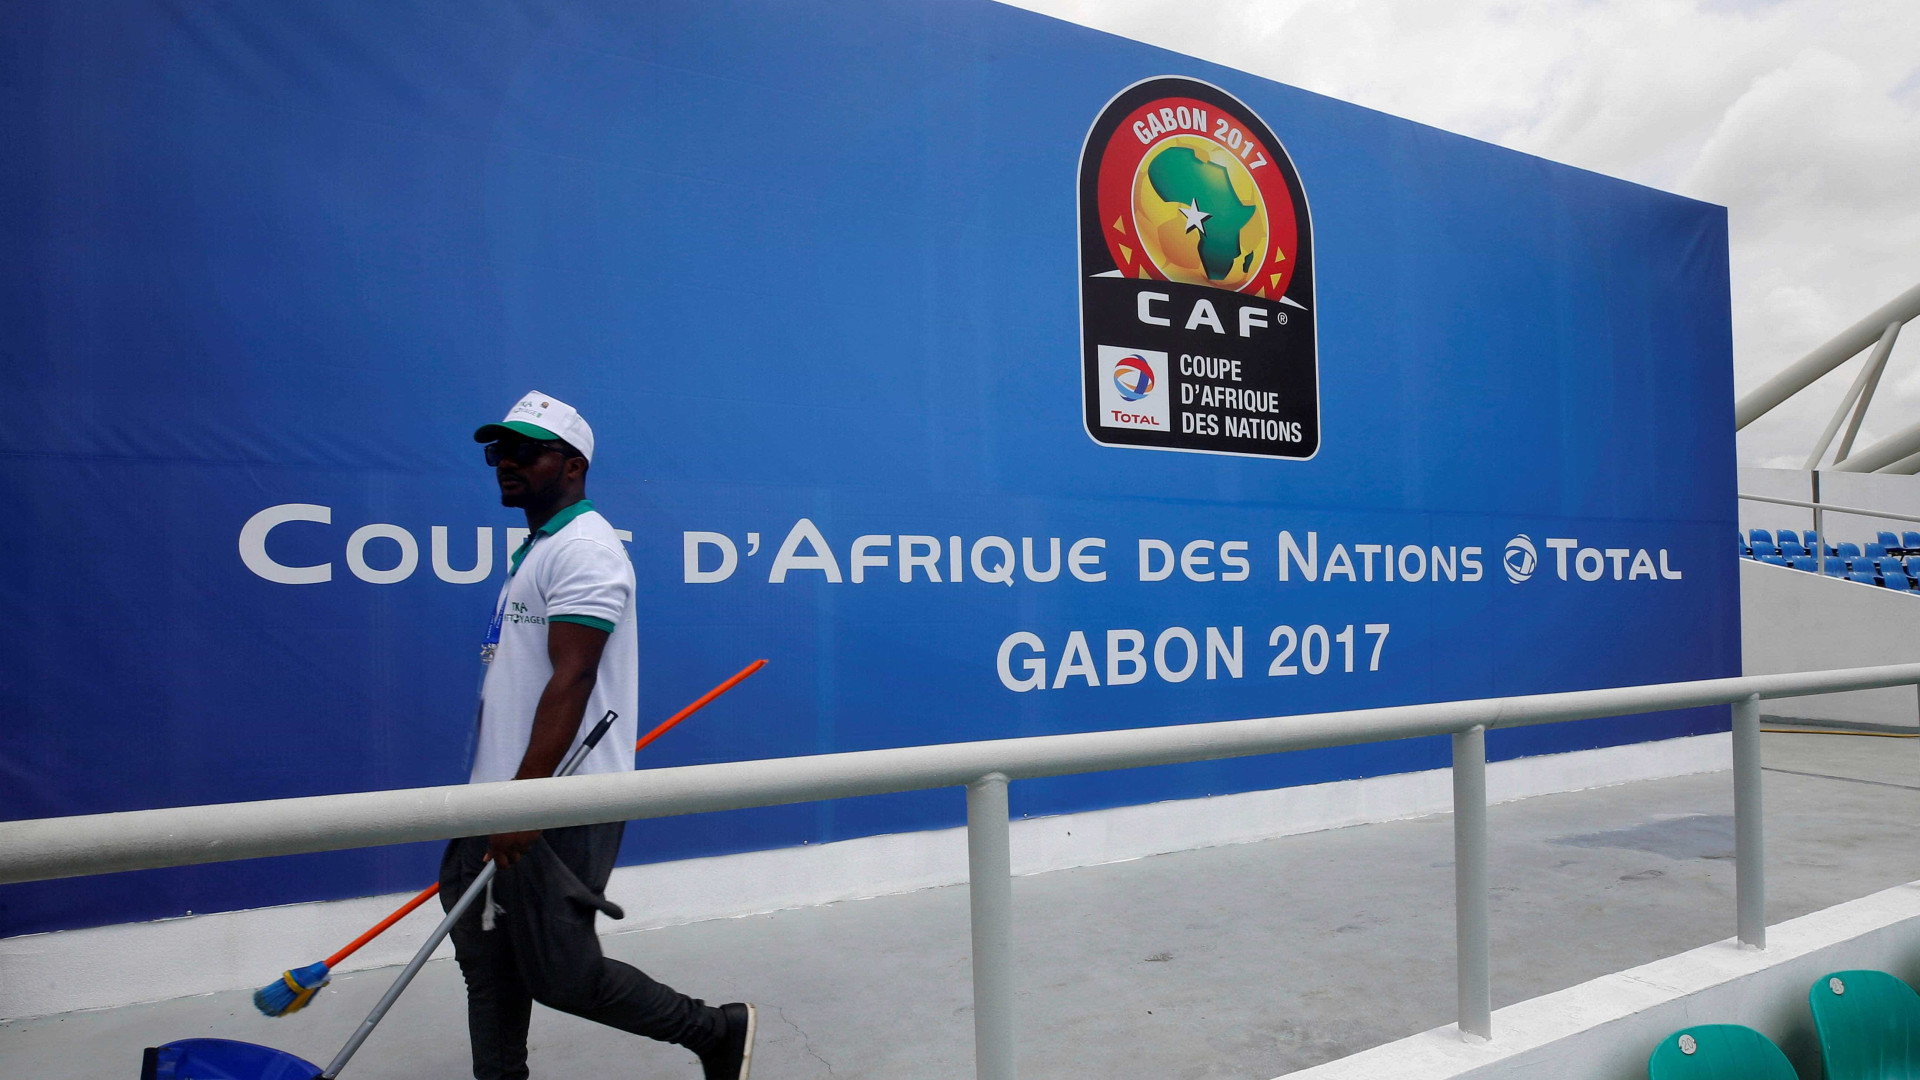 Copa Africana começa no Gabão com 
polêmica sobre preconceito